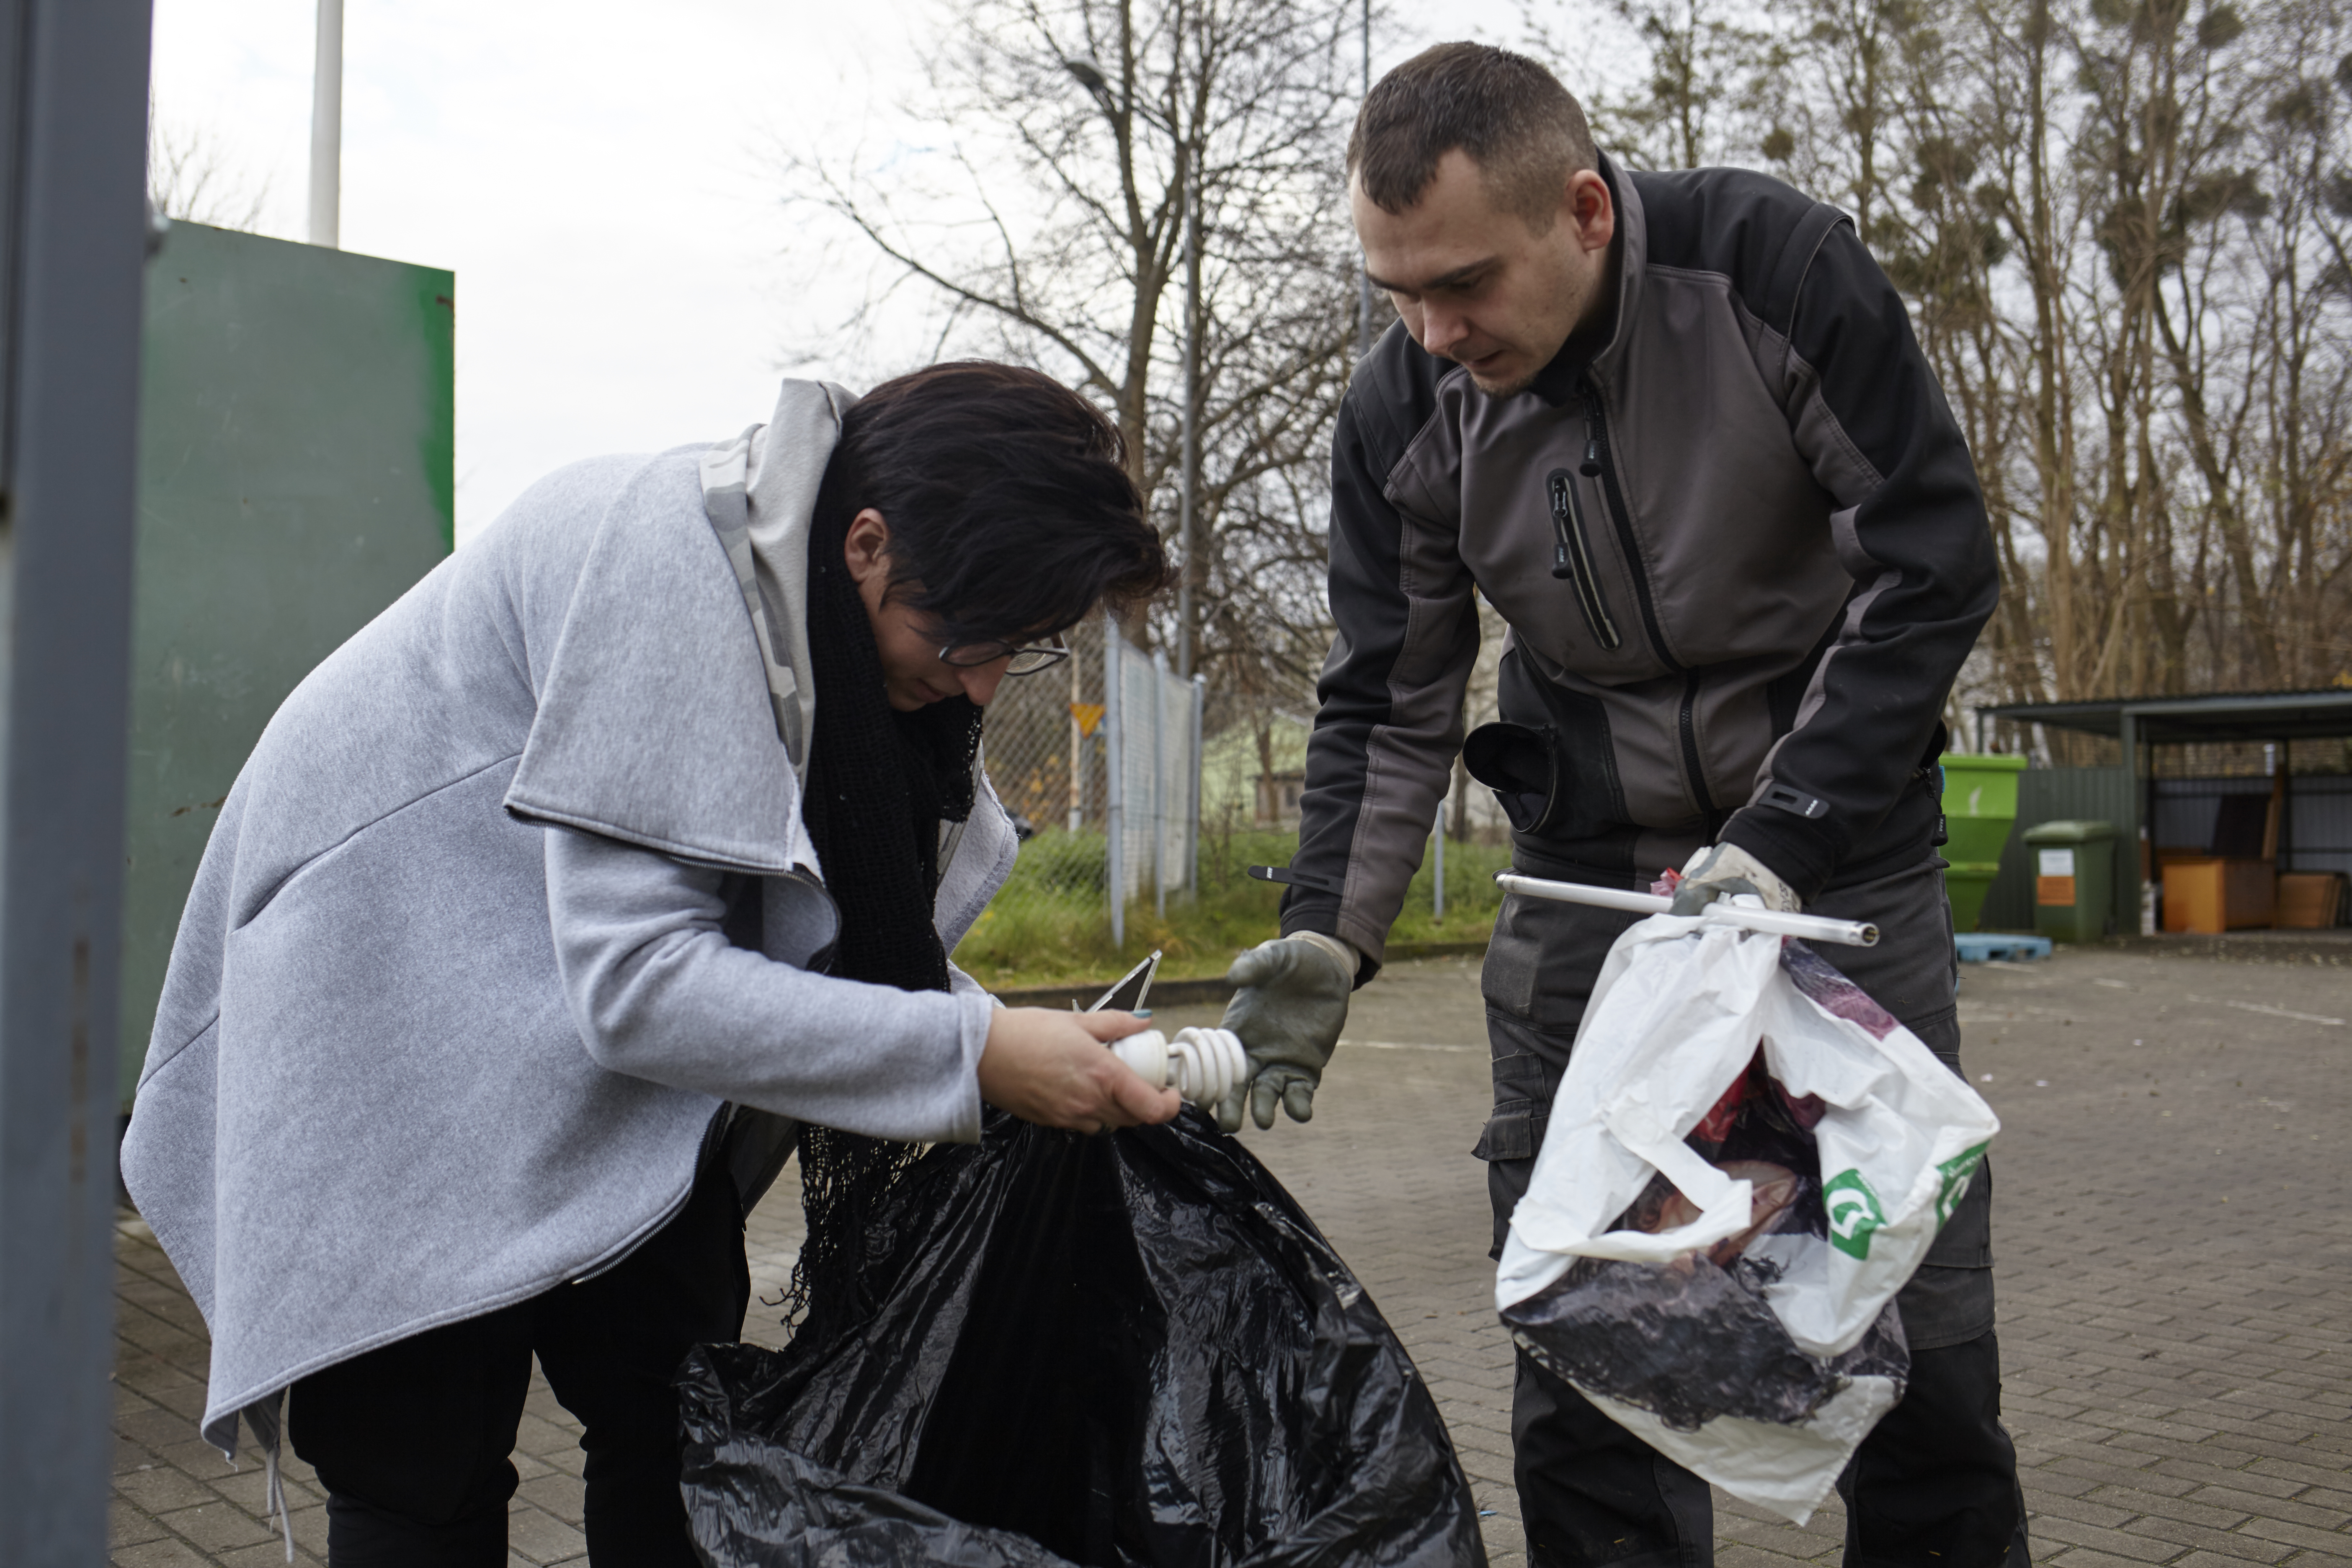 Na zdjęciu punkt zbiórki odpadów komunalnych. Na pierwszym planiu dwóch mieszkańców Szczecina - kobieta i mężczyzna. Kobieta trzyma w ręku otwarty worek foliowy, z którego wyjmuje żarówkę i podaje ją mężczyźnie.